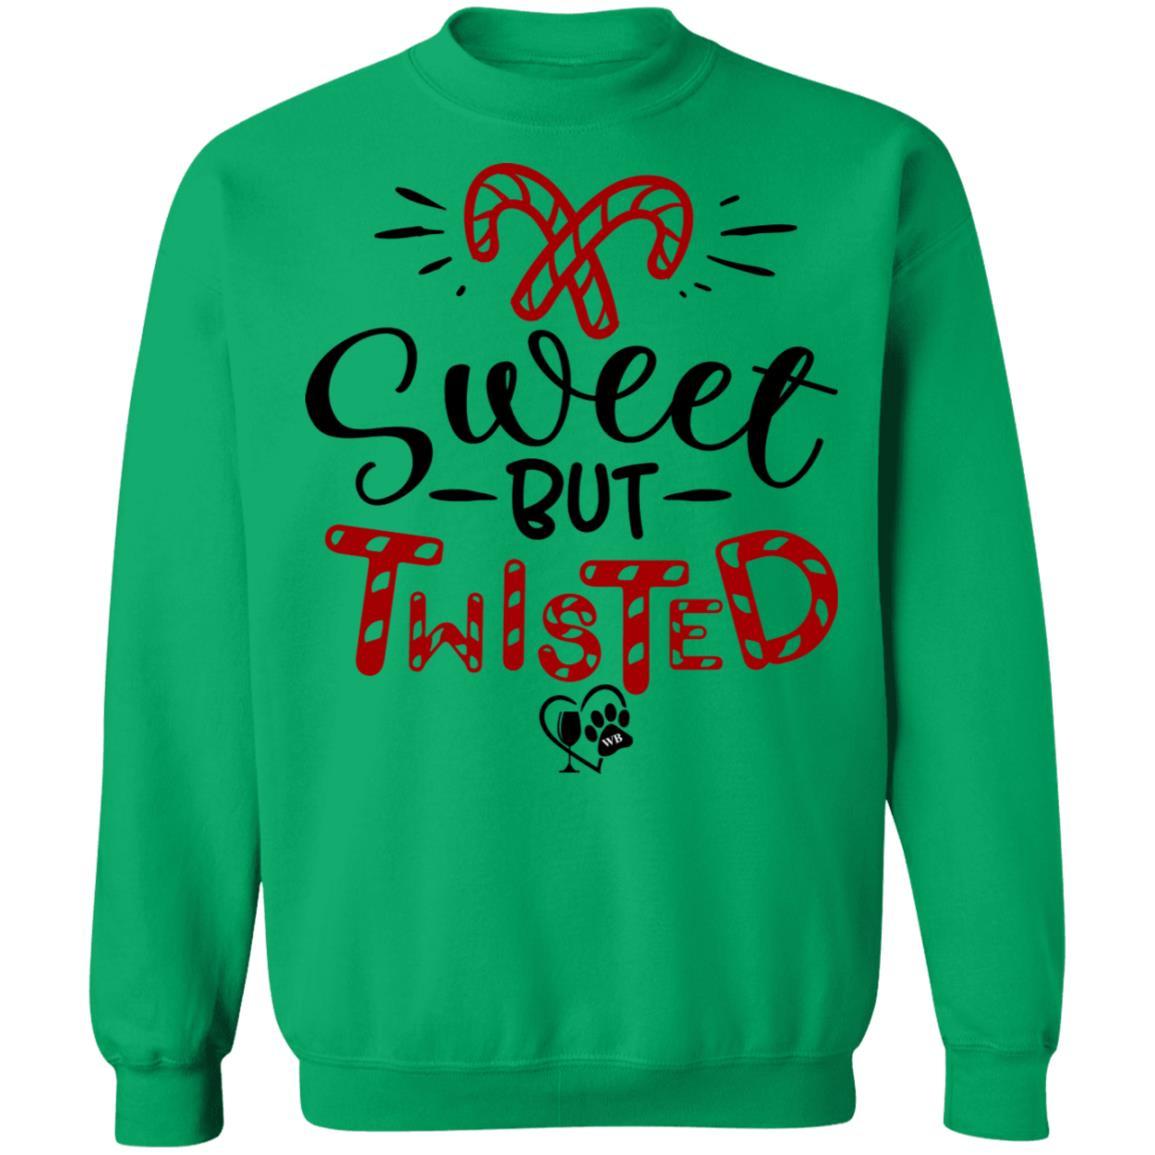 Sweatshirts Irish Green / S WineyBitches.Co "Sweet But Twisted" Crewneck Pullover Sweatshirt  8 oz. WineyBitchesCo